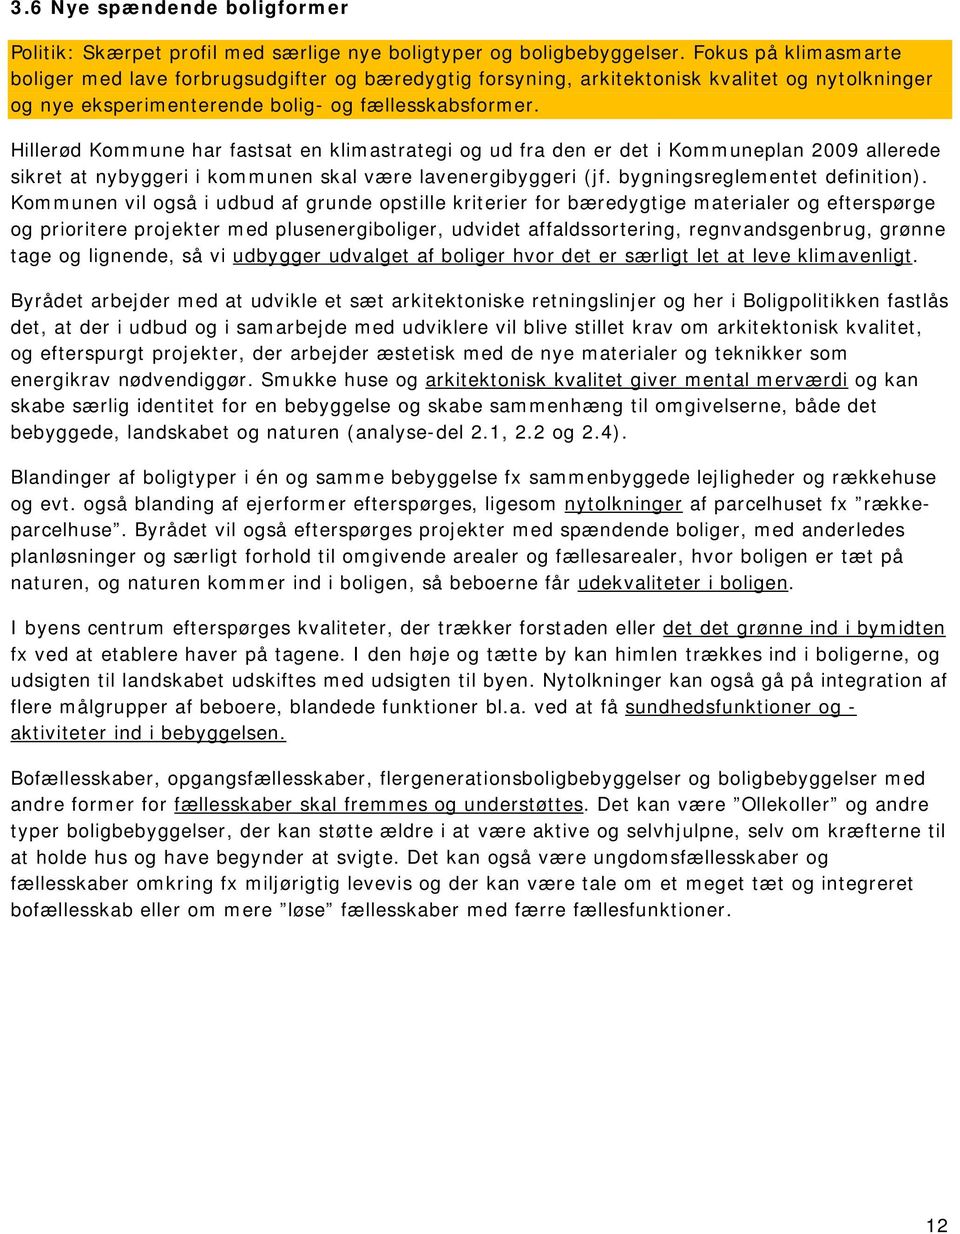 Hillerød Kommune har fastsat en klimastrategi og ud fra den er det i Kommuneplan 2009 allerede sikret at nybyggeri i kommunen skal være lavenergibyggeri (jf. bygningsreglementet definition).